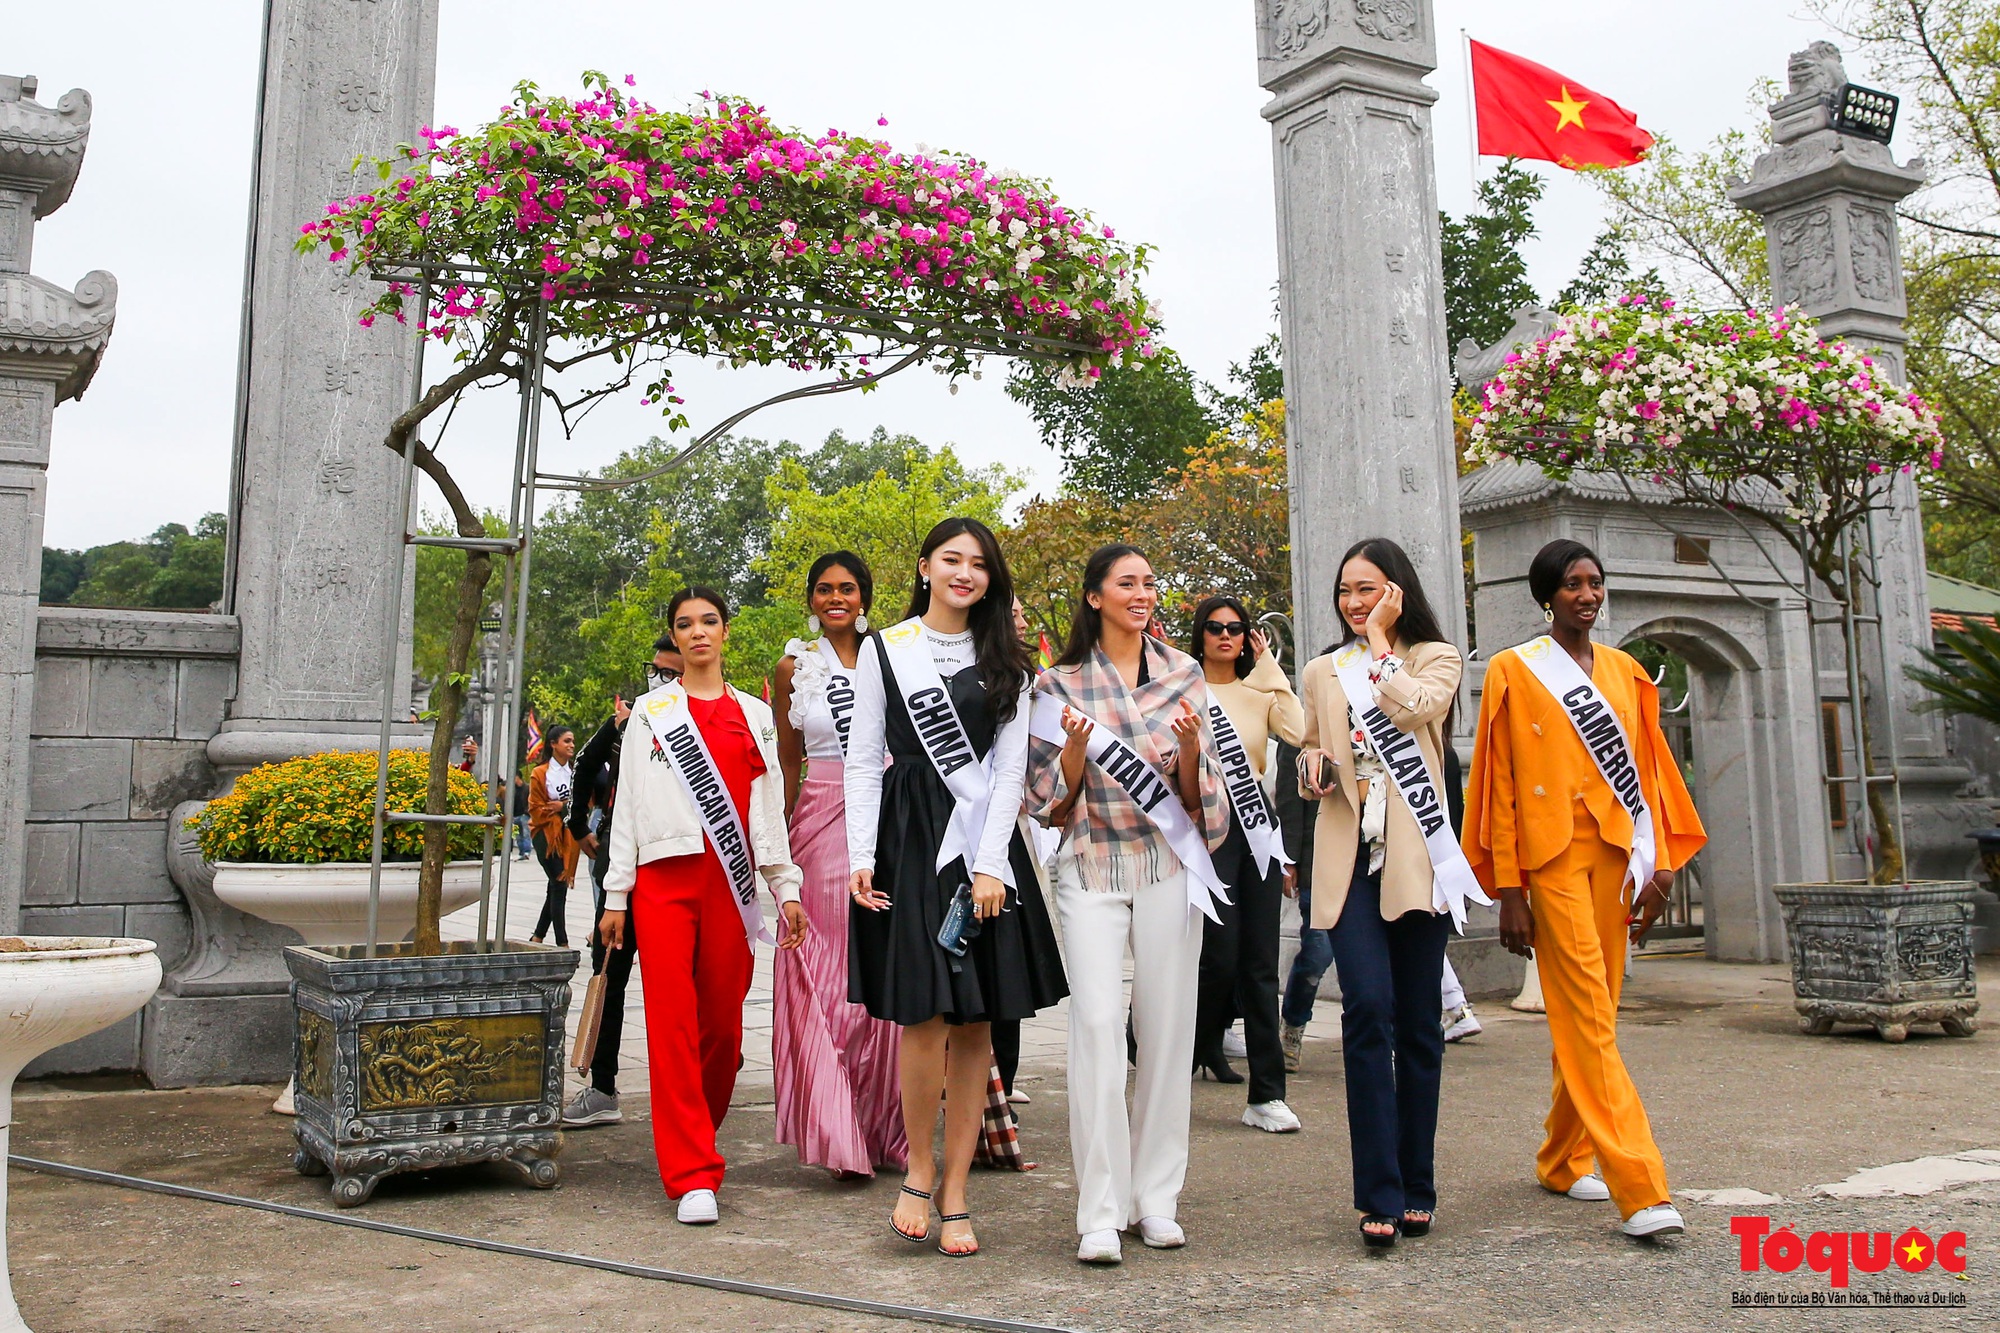 Dàn mỹ nhân Hoa hậu Du lịch thế giới khoe sắc cùng Lễ hội hoa Mê Linh - Ảnh 4.